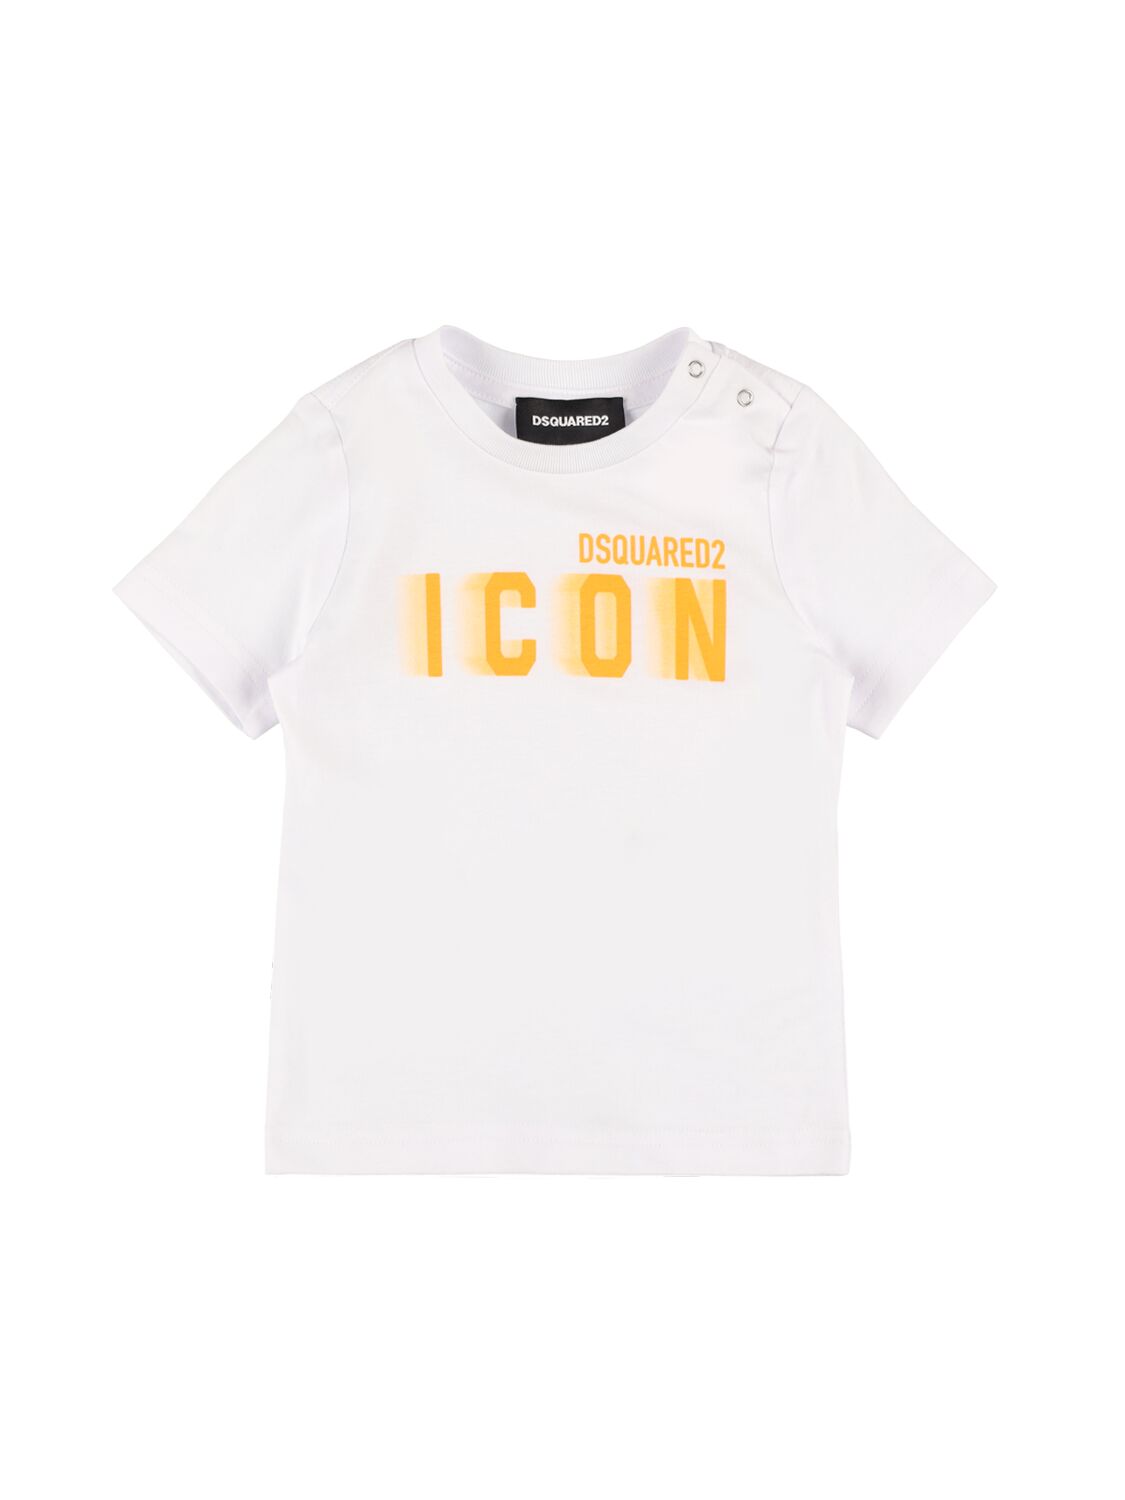 Dsquared2 Kids' Logo Printed Cotton Jersey T-shirt In White,orange